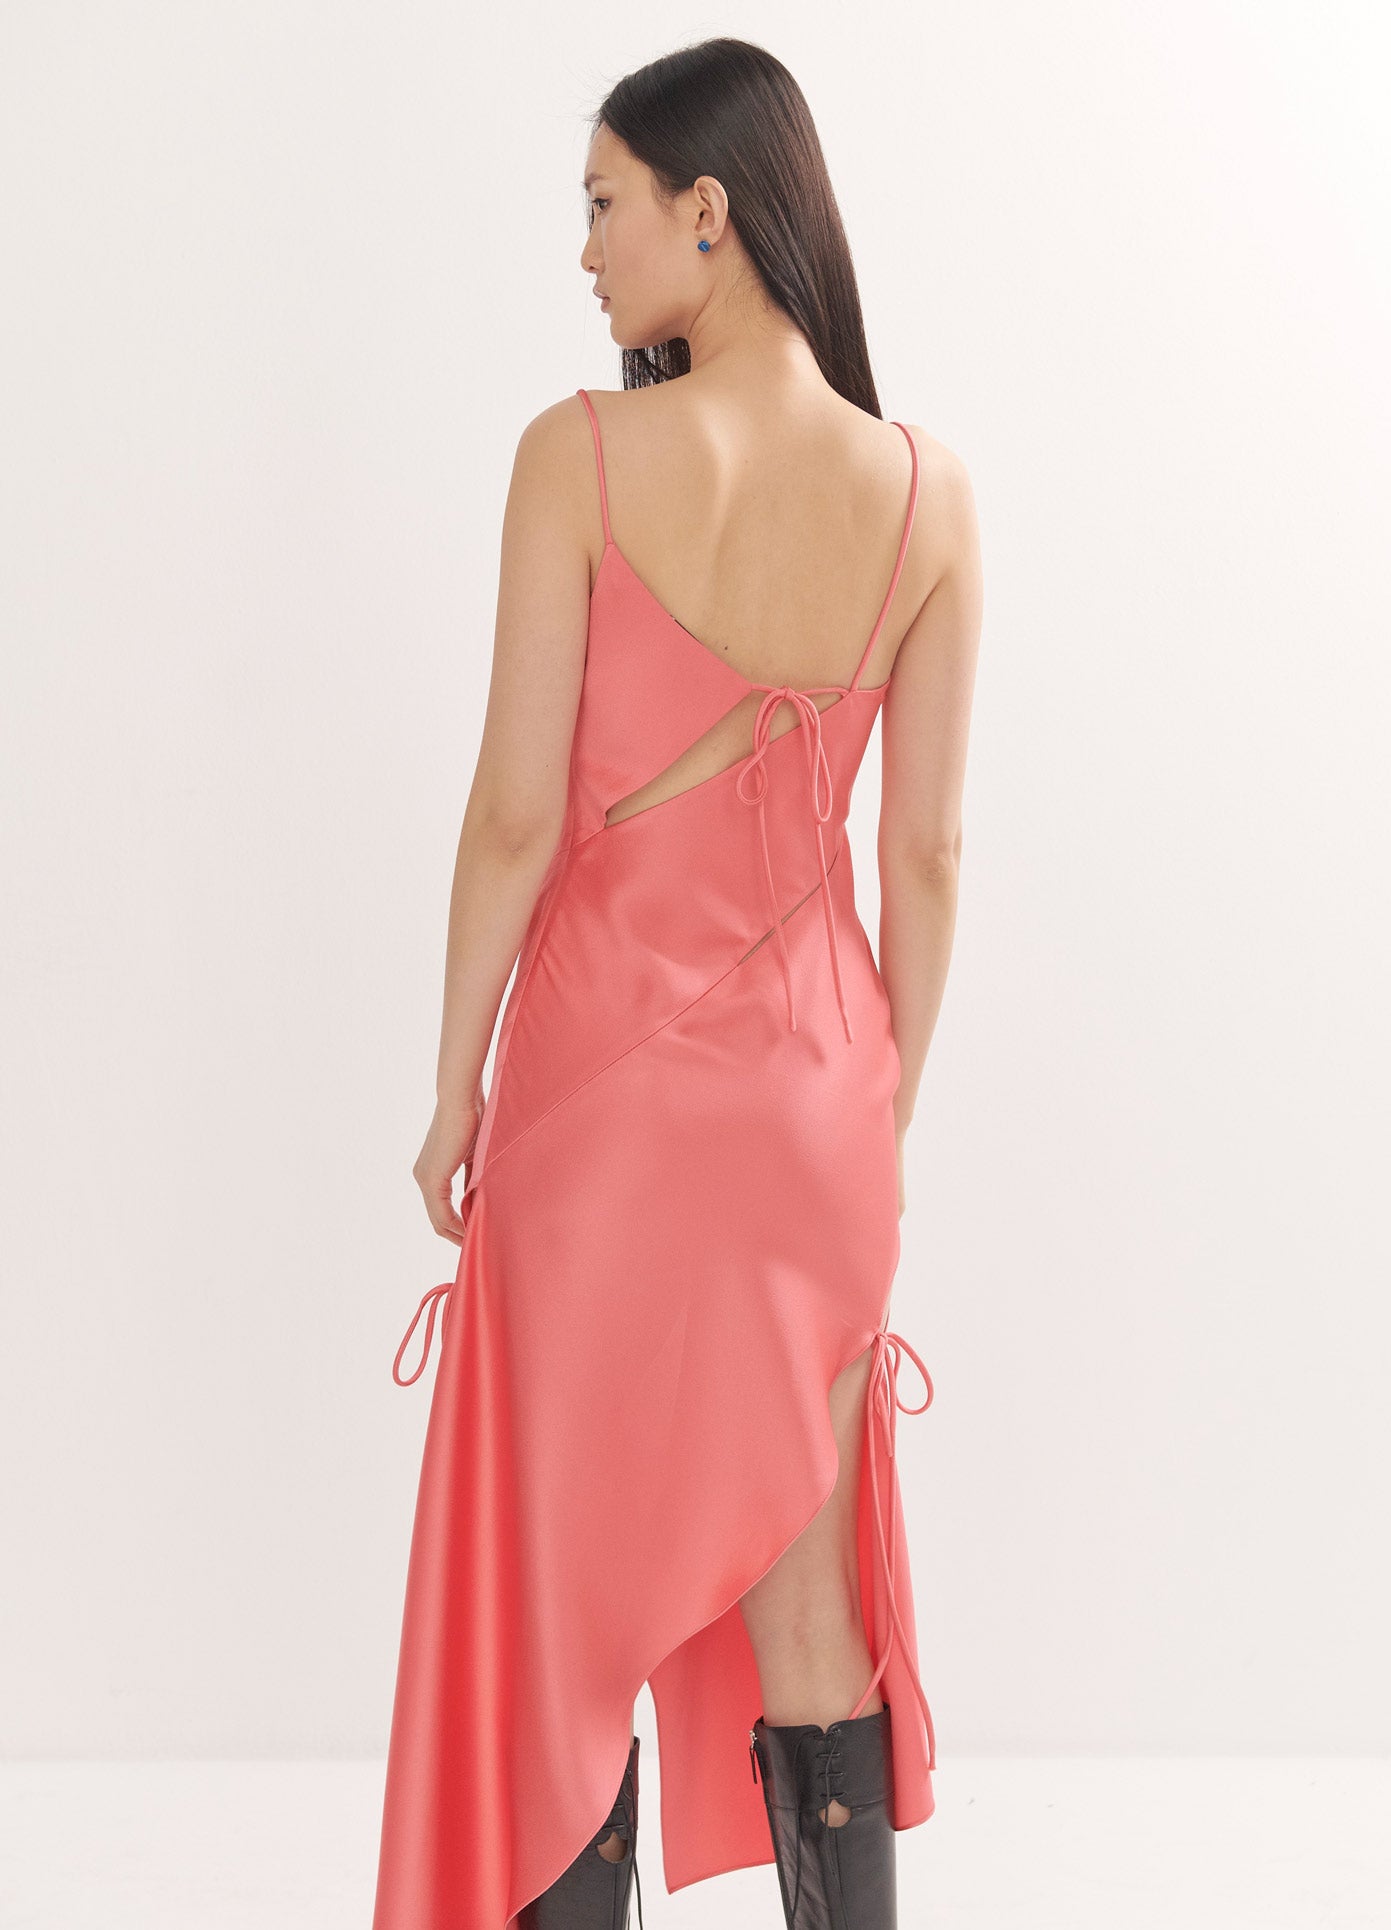 MONSE Slip Dress in Watermelon on Model Full Back View